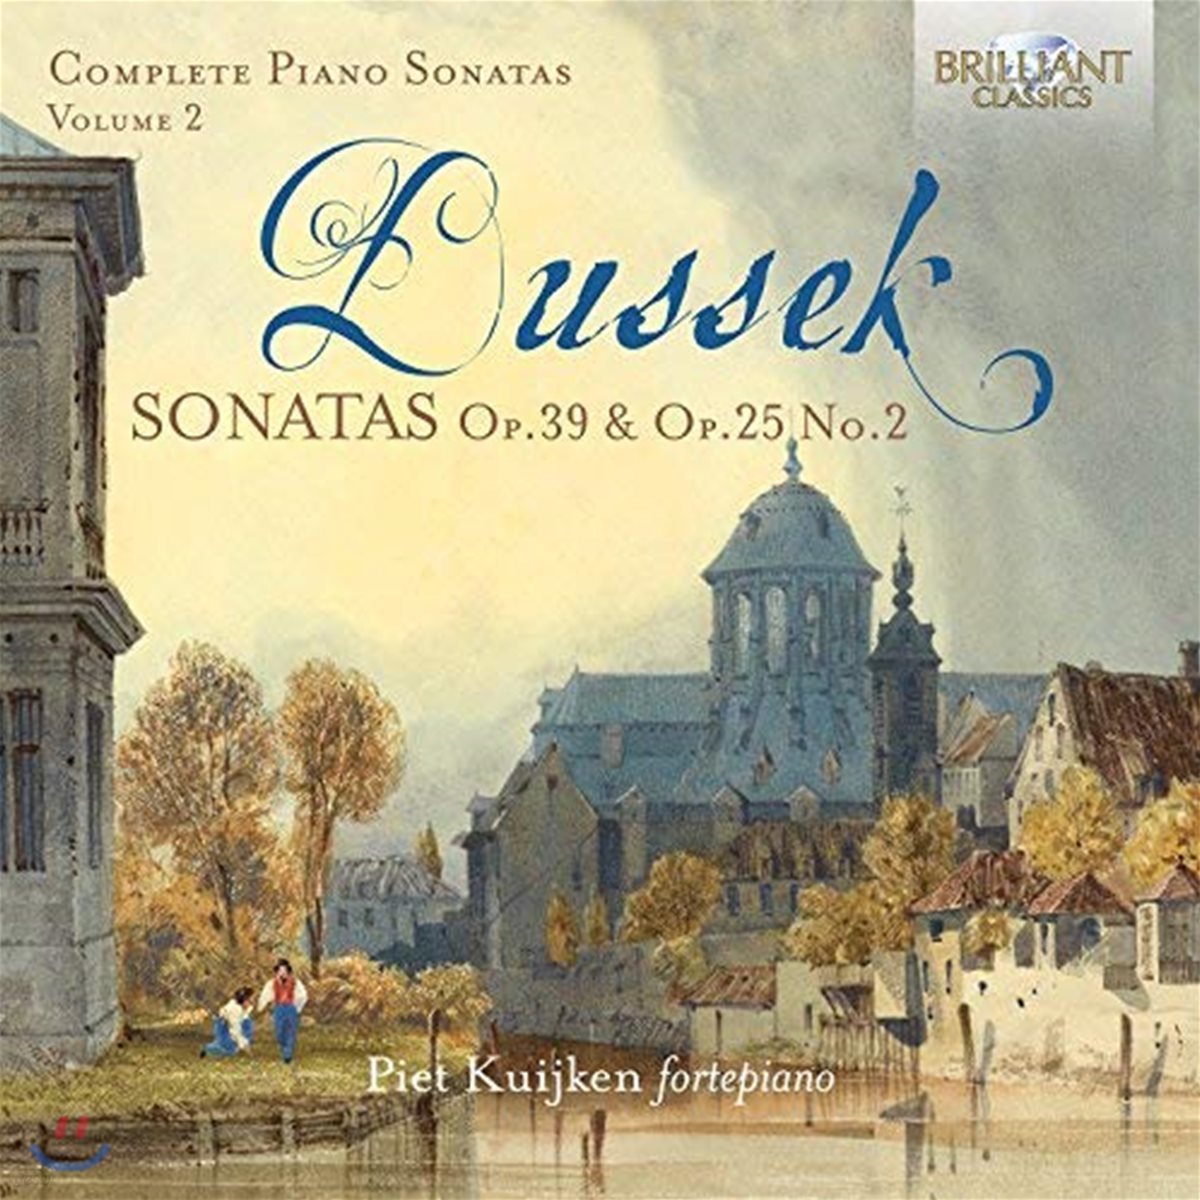 Piet Kuijken 두세크: 피아노 소나타 전곡 2집 (Dussek: Complete Piano Sonatas Op.39, Op.25 No.2)